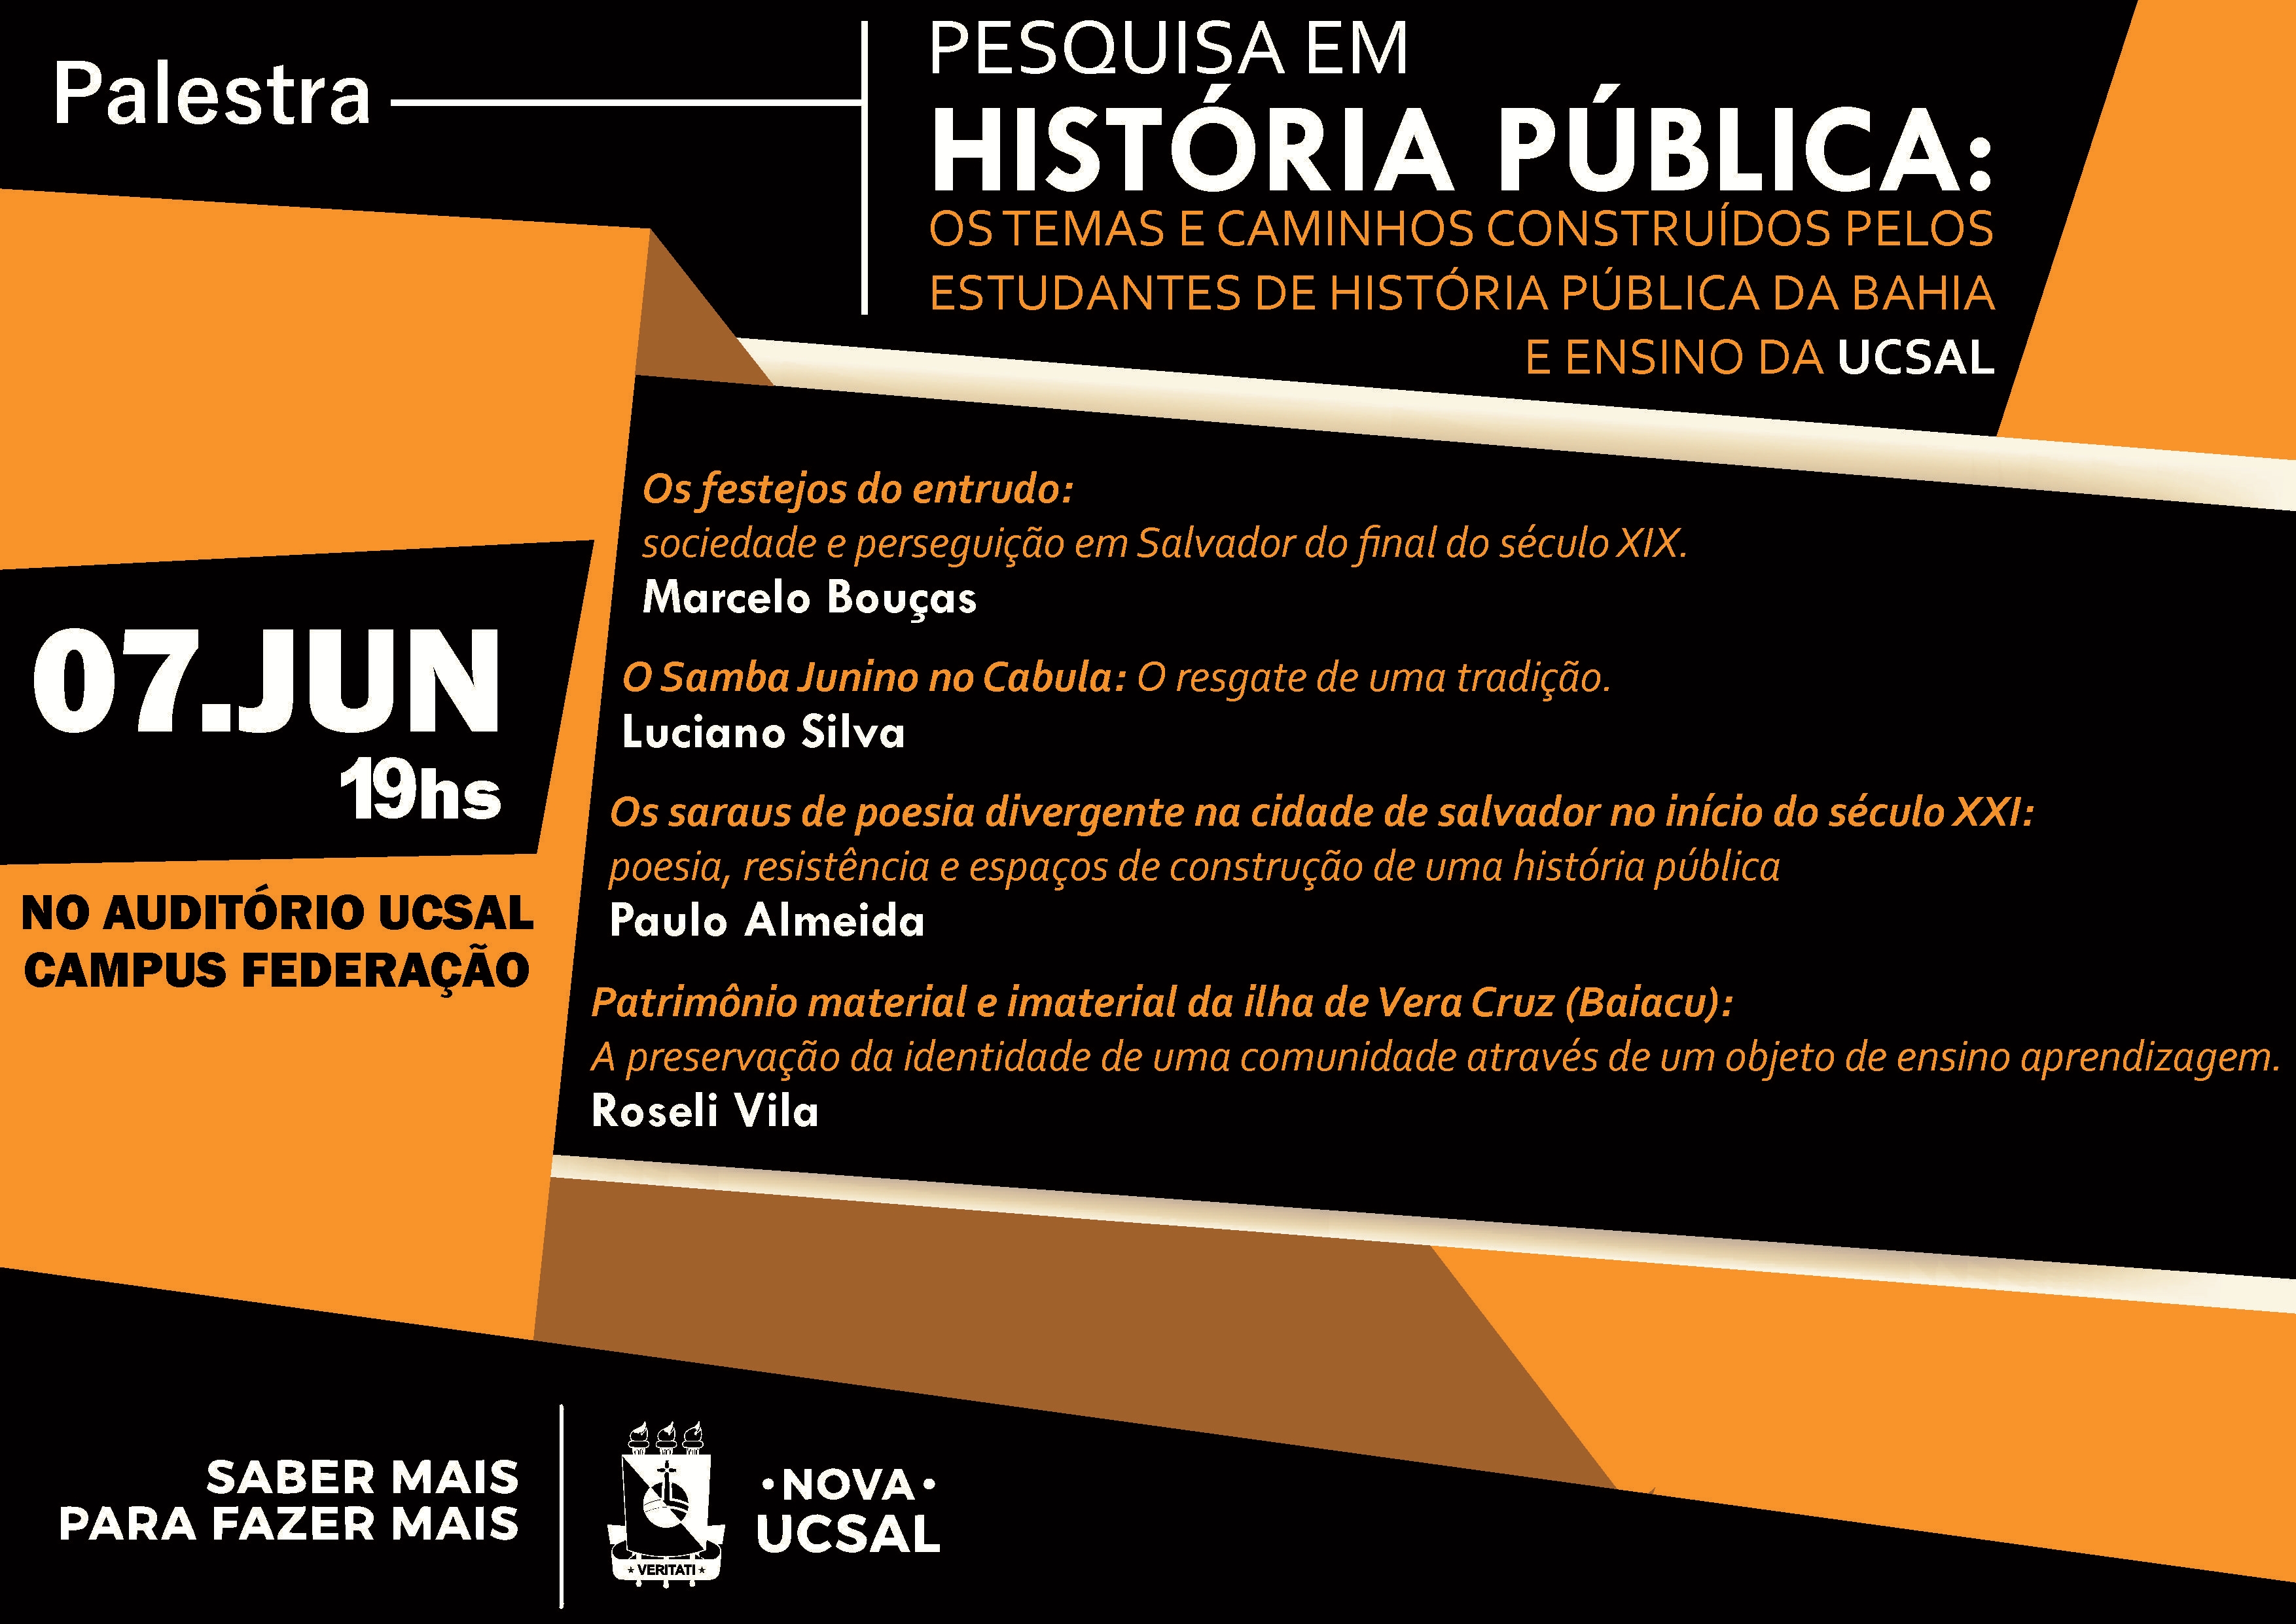 História Pública da Bahia: construindo e publicizando nossas histórias com participação popular.